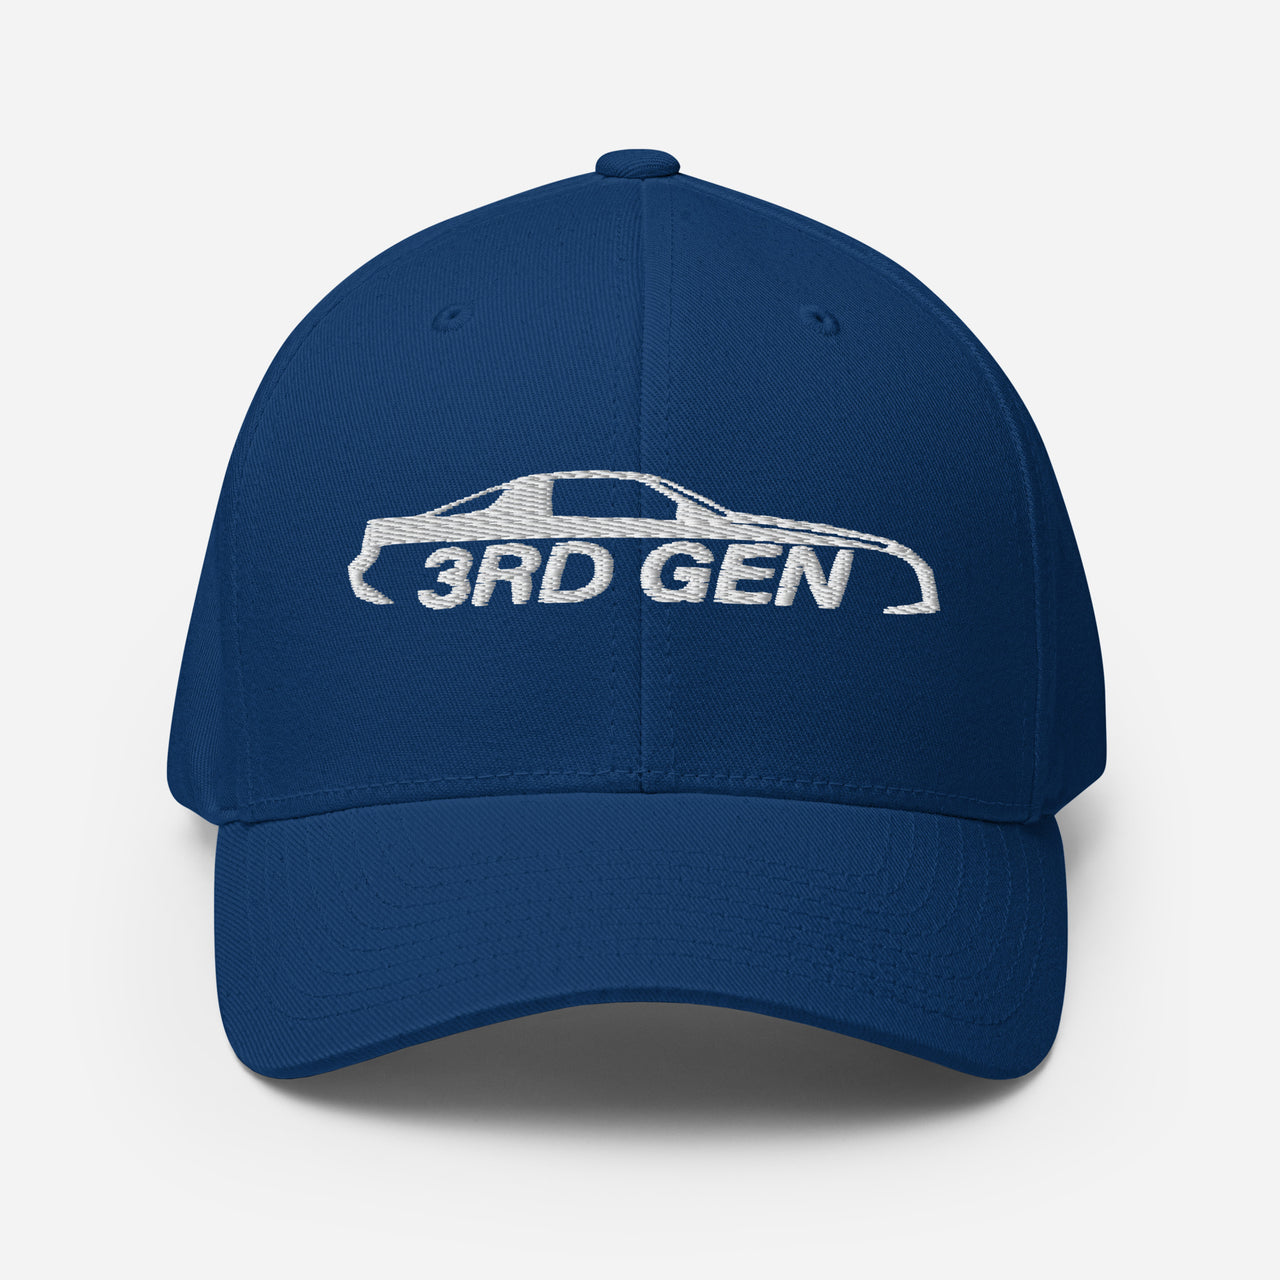 Third Gen Camaro Hat Flexfit Cap